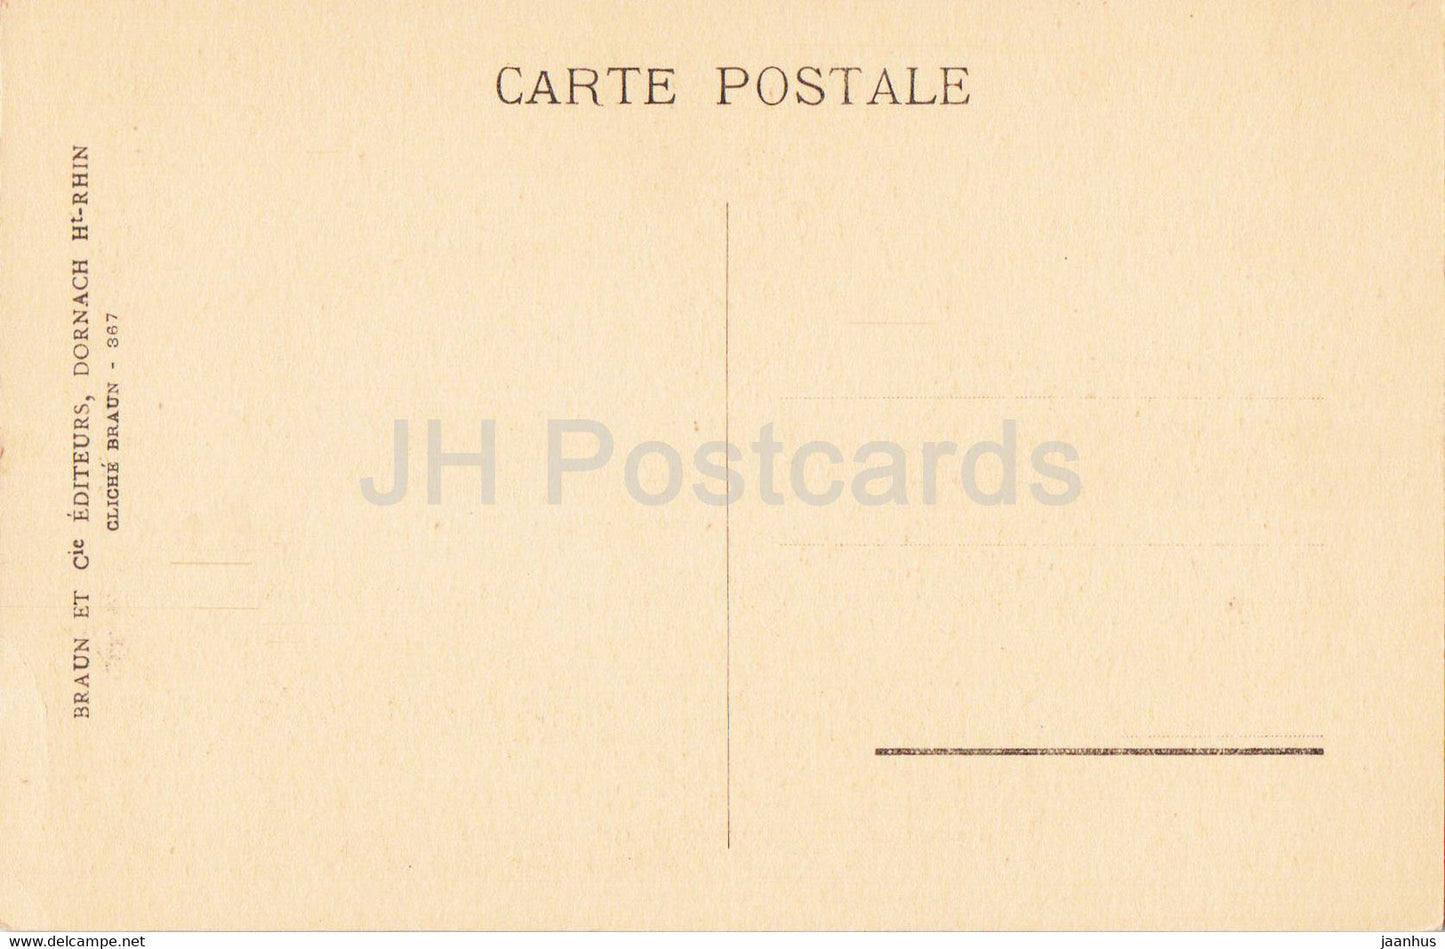 Mittelbergheim - La Mairie - old postcard - France - unused